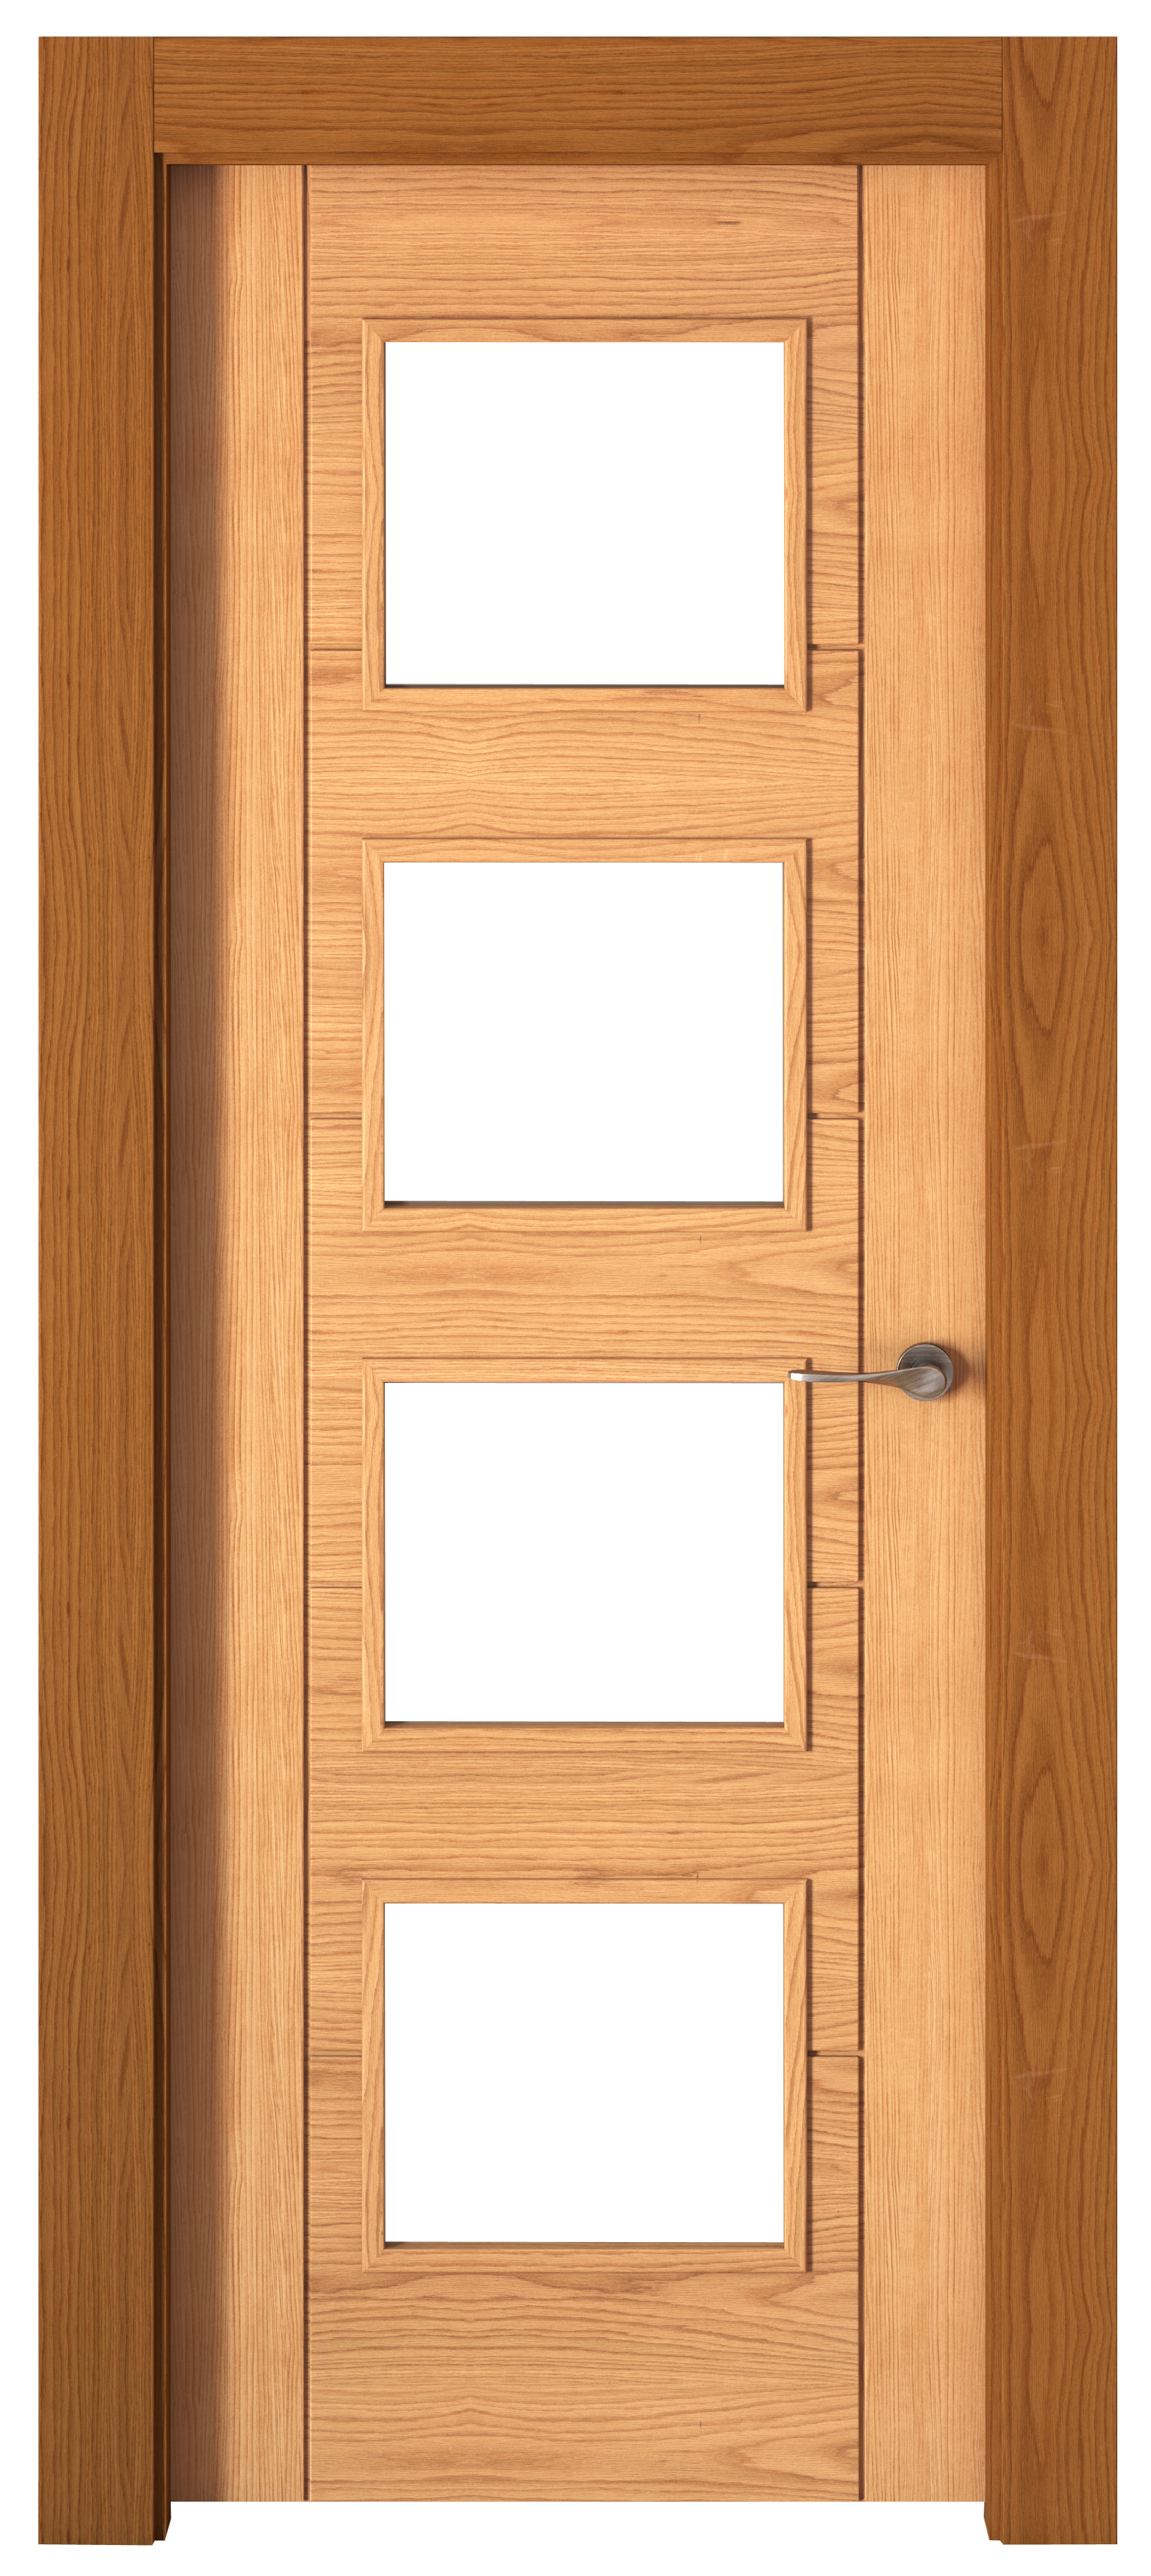 Puerta noruega roble apertura izquierda con cristal 62.5cm